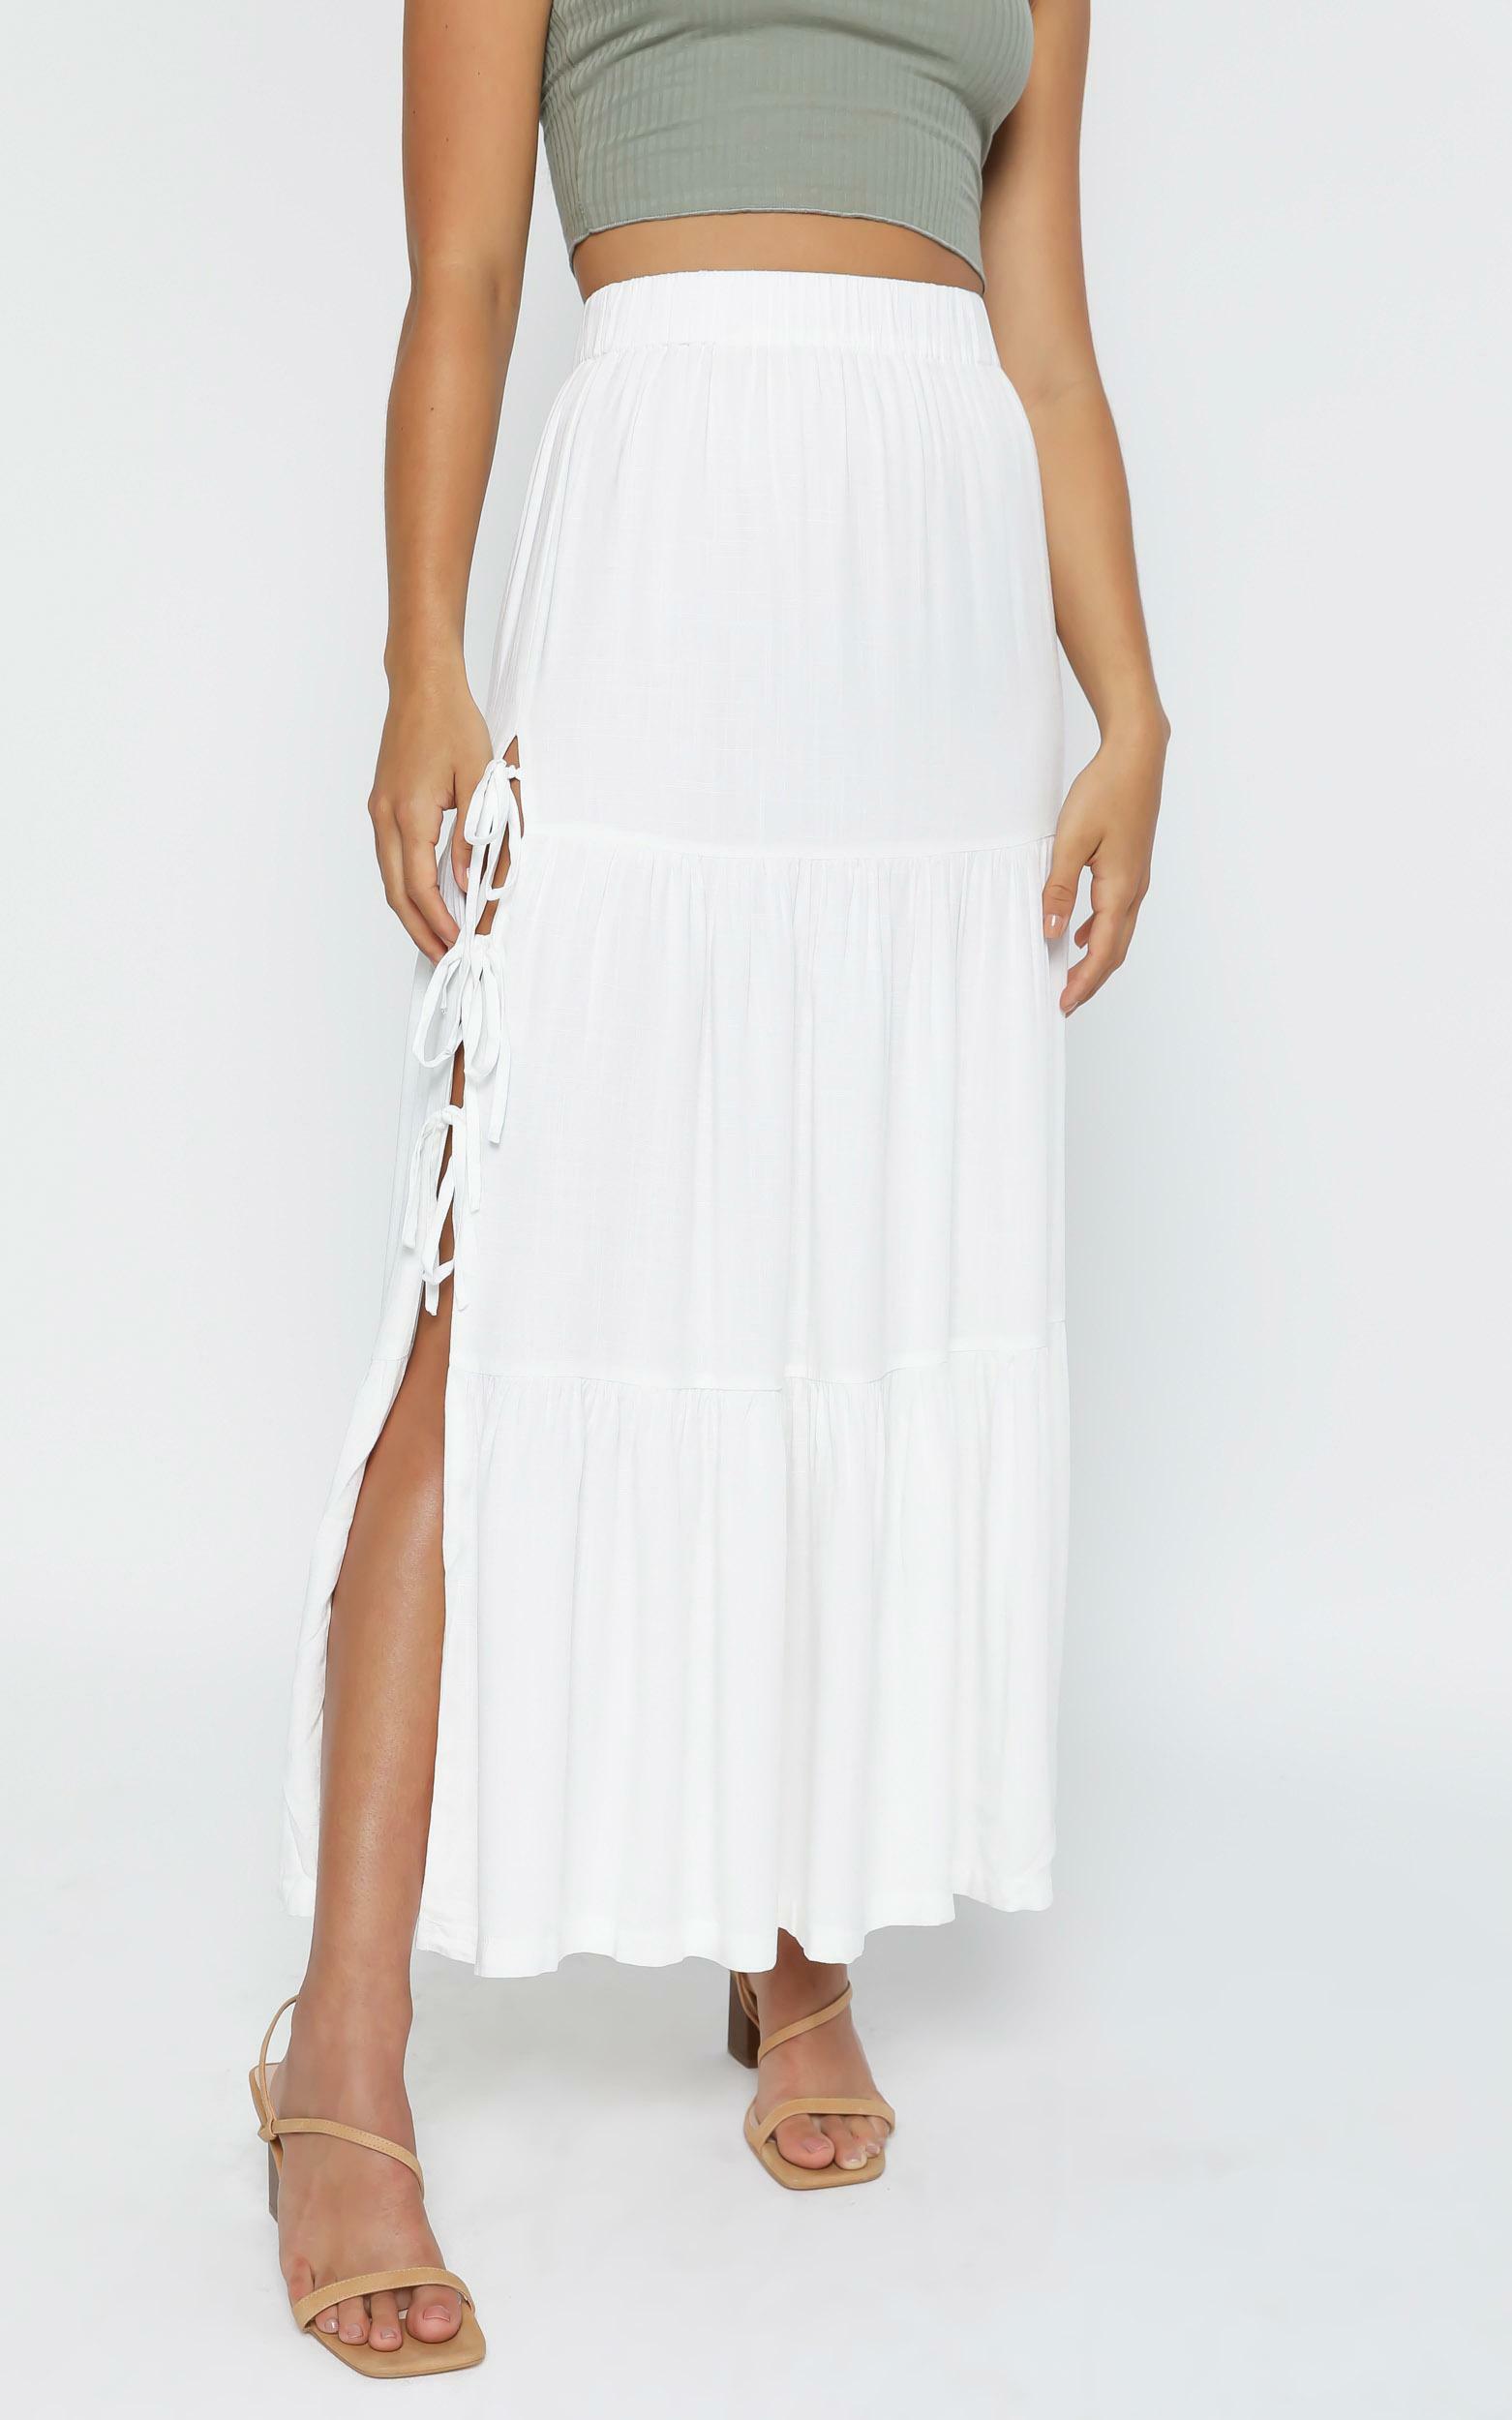 Annalisa Skirt in White | Showpo USA